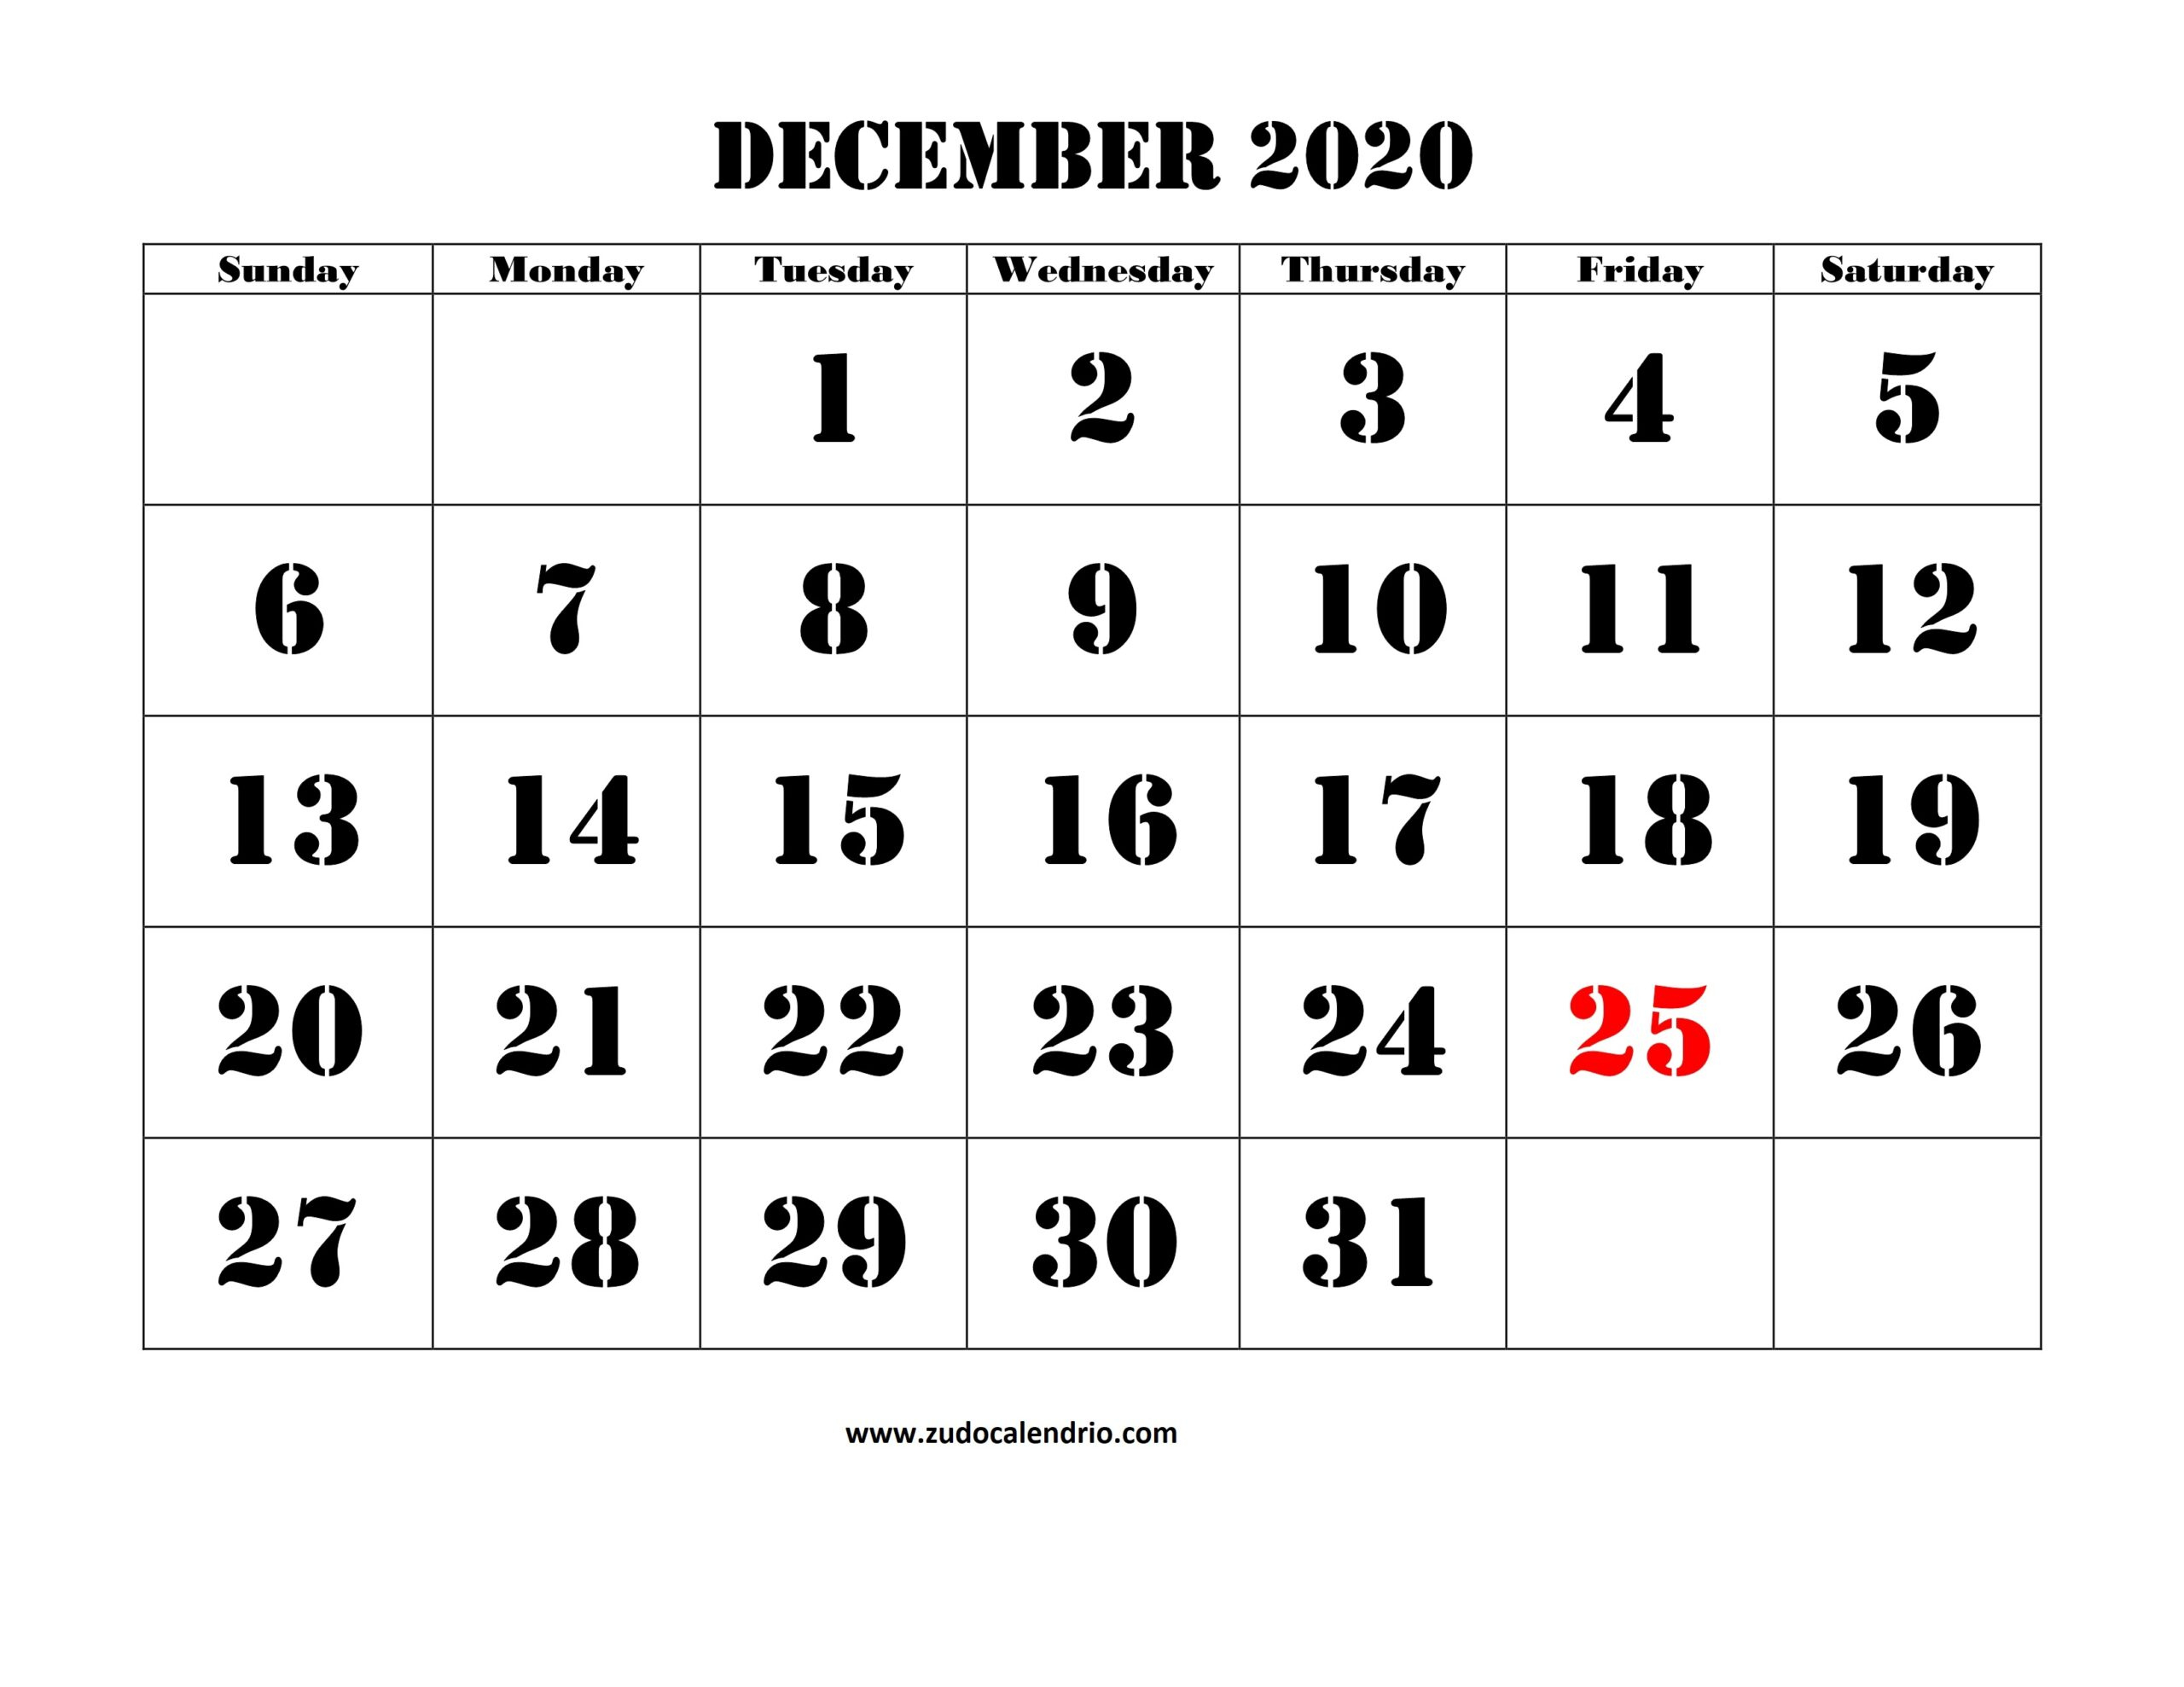 December 2020 Calendar With Holidays Pdf | Zudocalendrio December 2020 To Feb 2021 Calendar